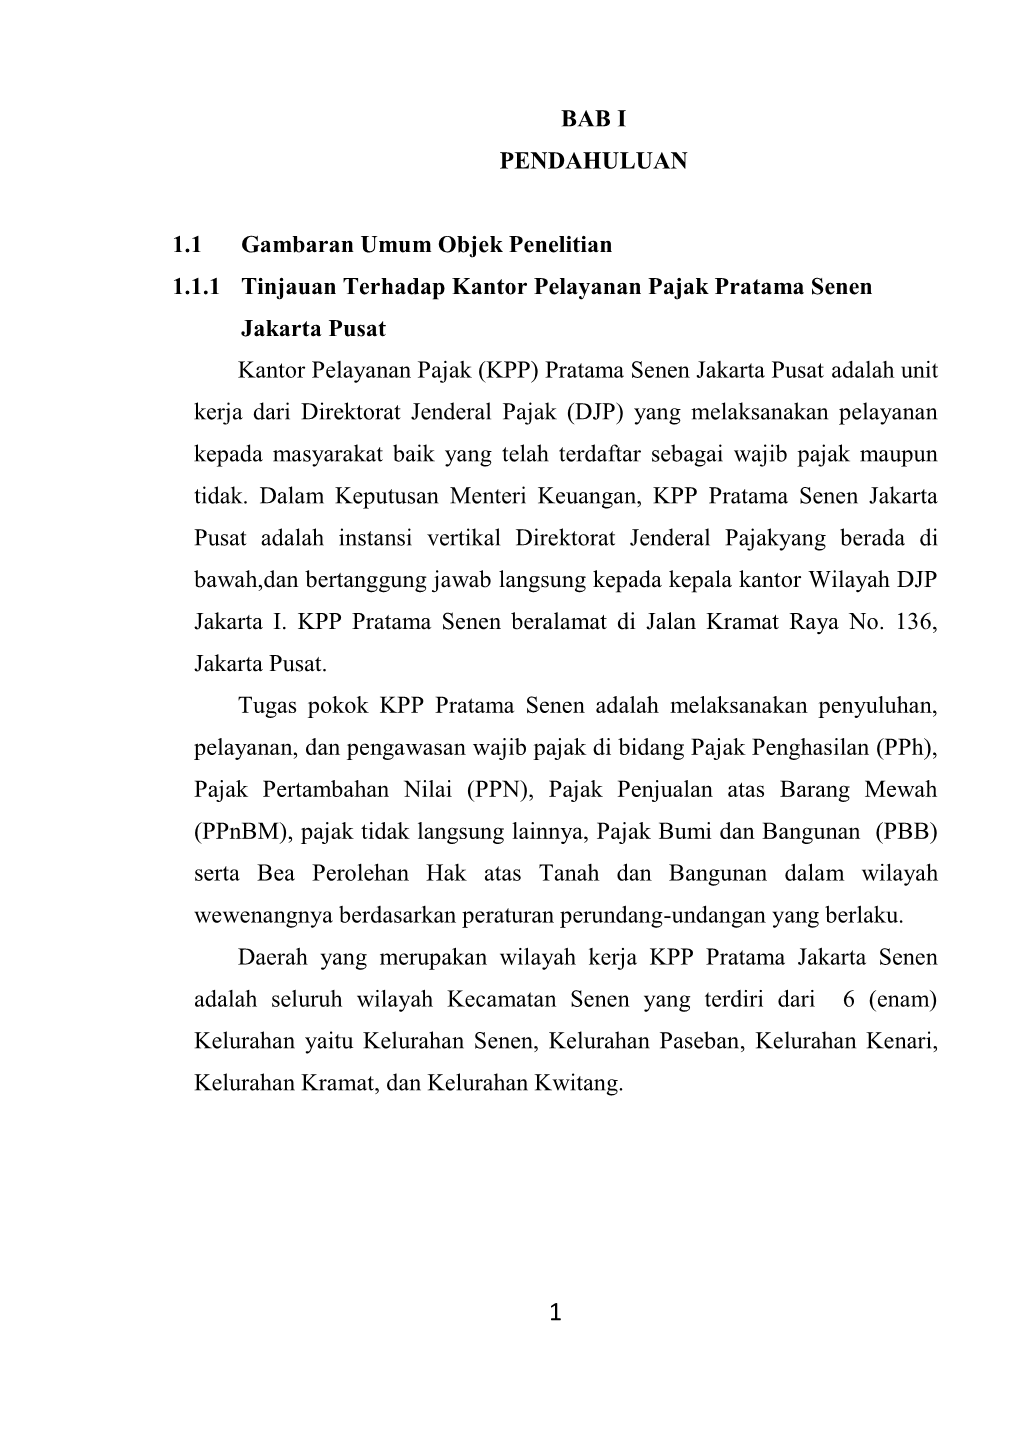 BAB I PENDAHULUAN 1.1 Gambaran Umum Objek Penelitian 1.1.1 Tinjauan Terhadap Kantor Pelayanan Pajak Pratama Senen Jakarta Pusat